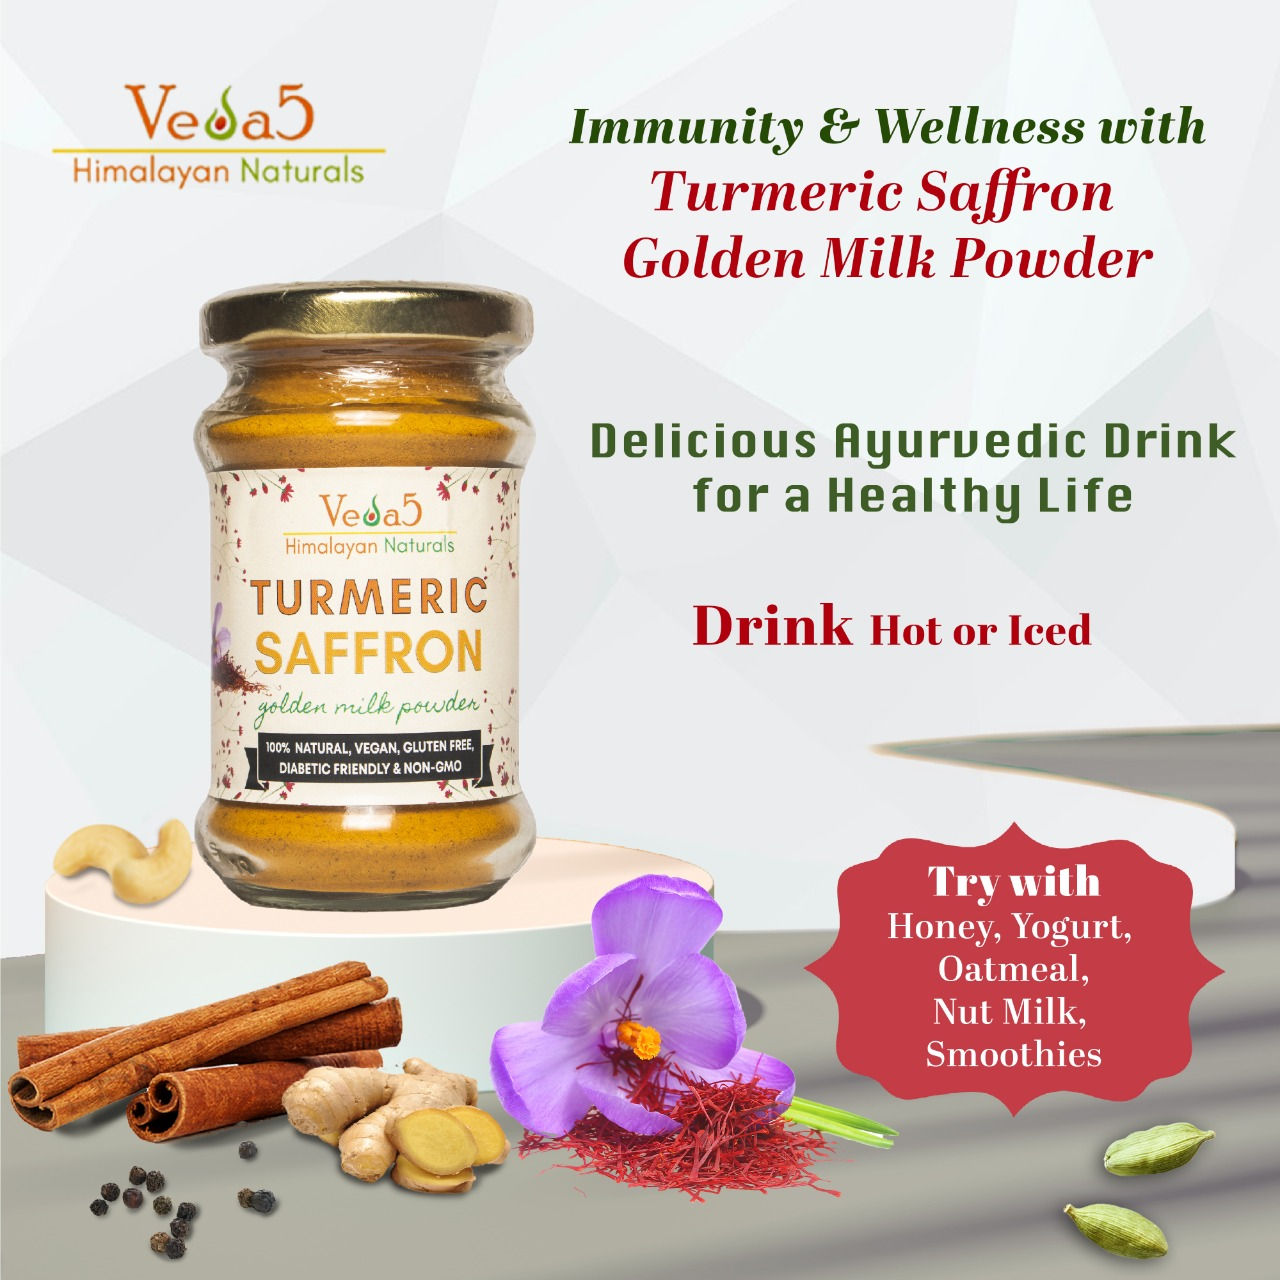 Turmeric Saffron Golden Milk Powder Veda5 Himalayan Naturals